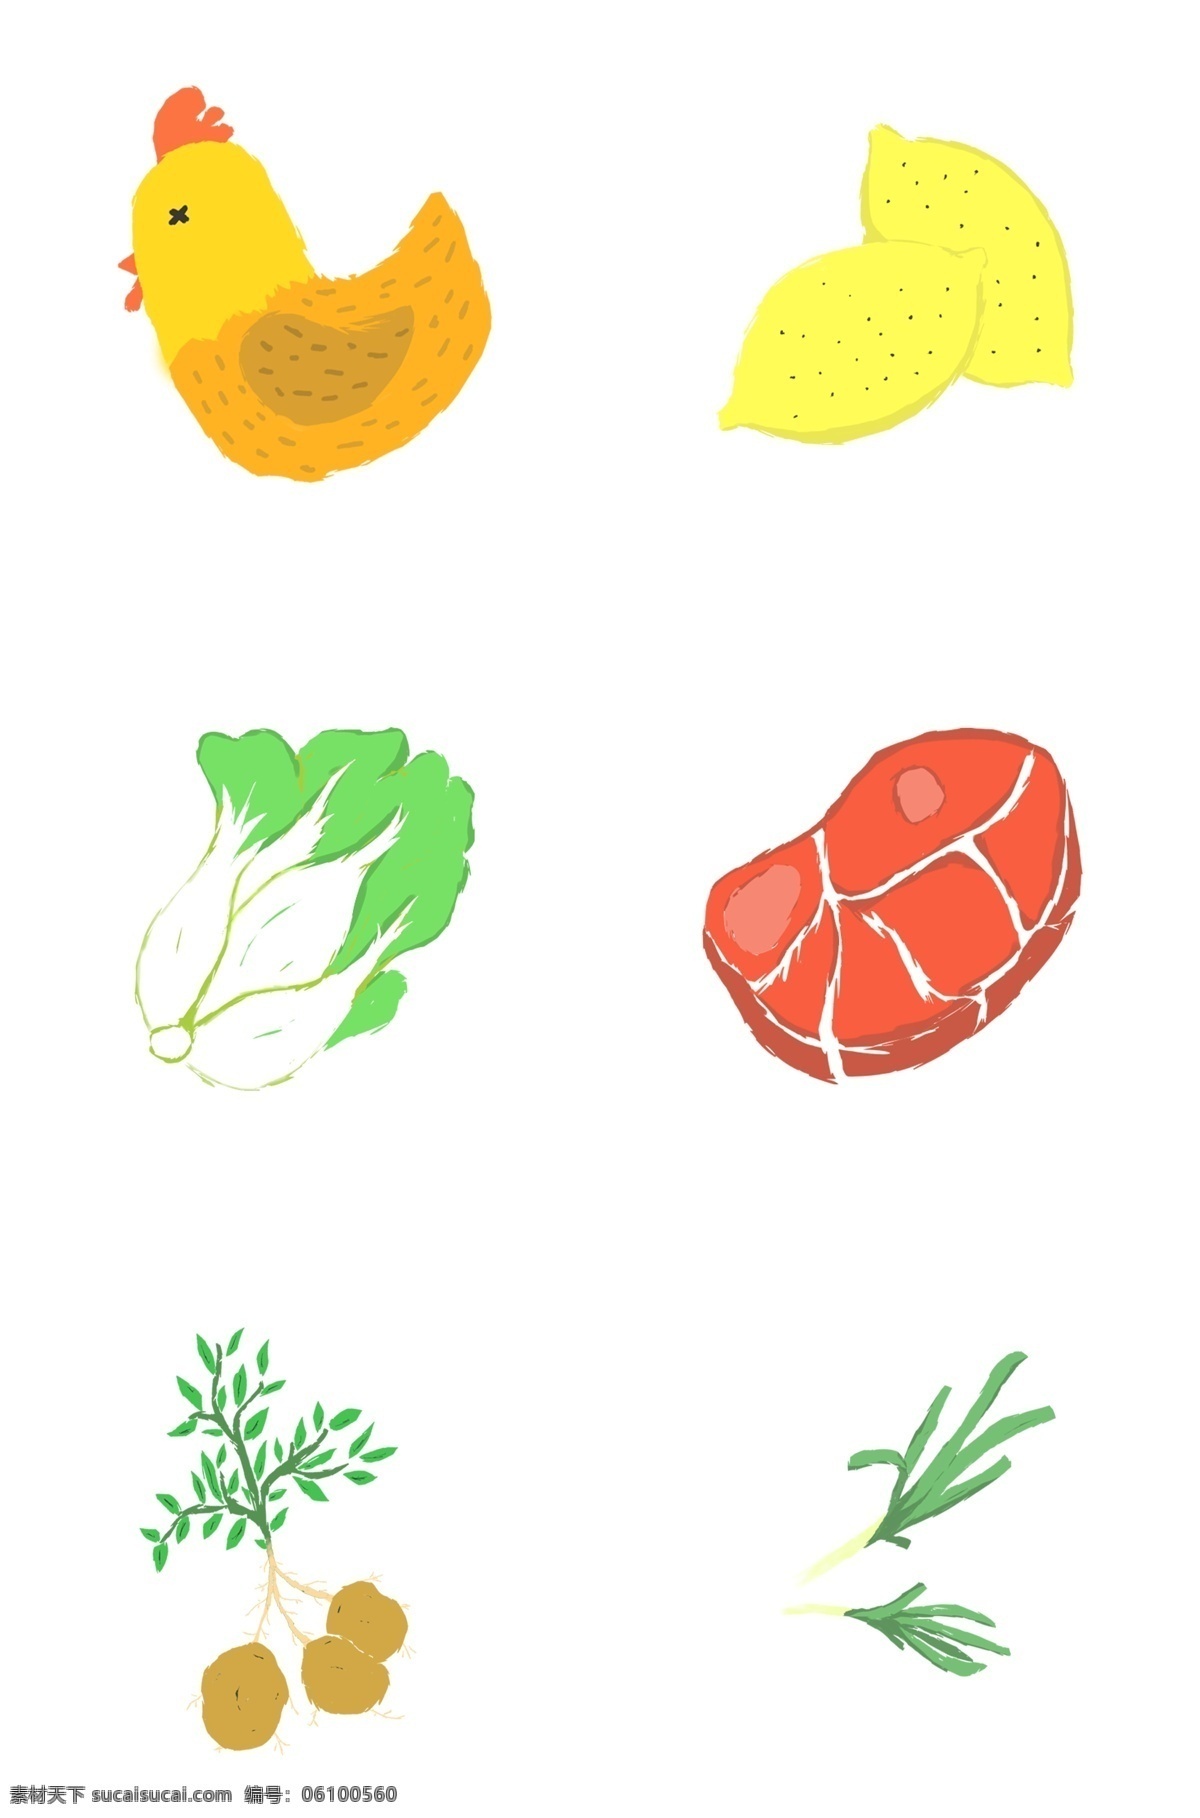 原创 手绘 蔬菜 食物 插画 卡通柠檬 卡通白菜 卡通肉 卡通蔬菜 卡通食物 矢量 厨房 生活日常 可爱